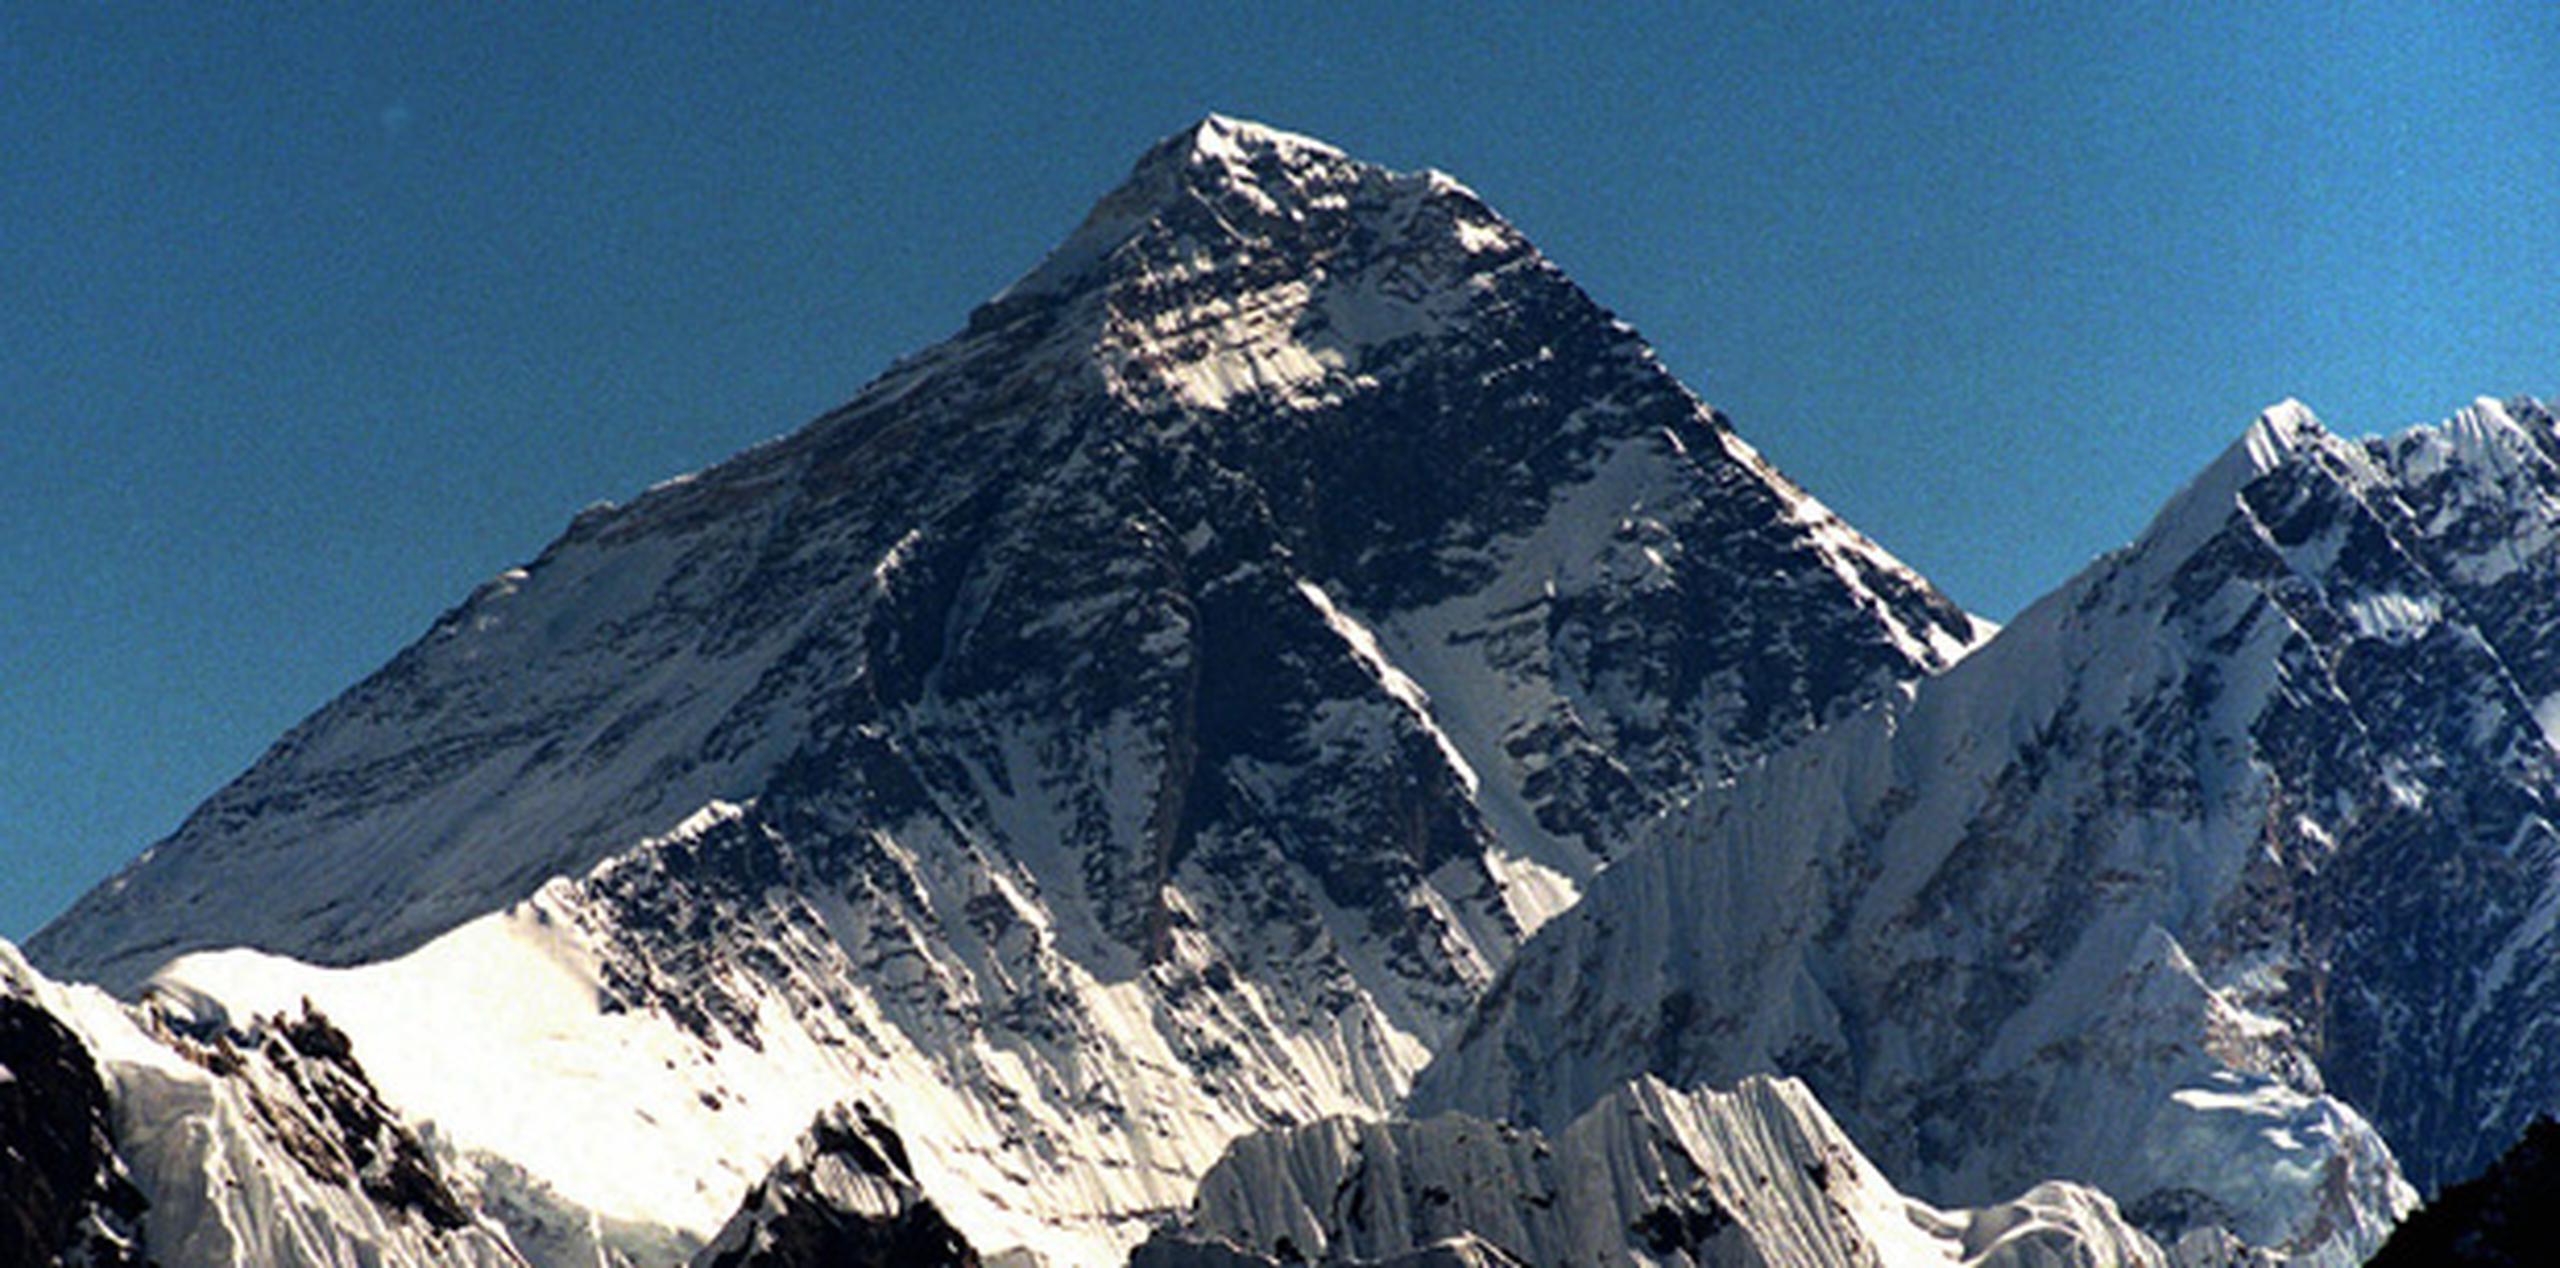 Nepal espera una temporada segura en el 2016, luego que una avalancha desatada por un terremoto mató a 19 alpinistas e hirió a 61 en un campamento en la base el año pasado. (AP)